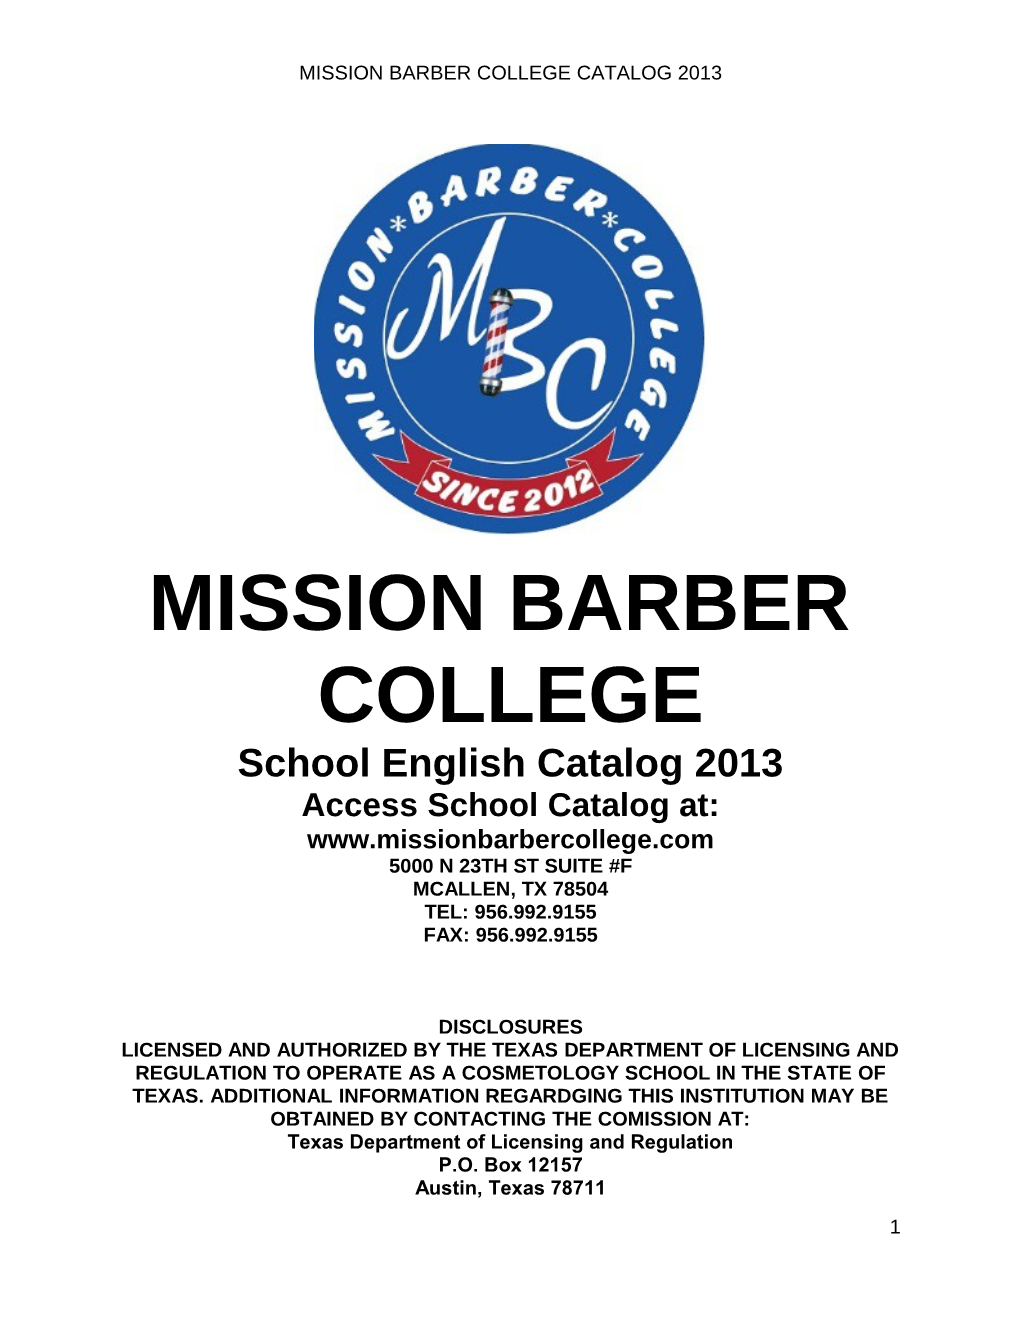 Mission Barber College Catalog 2013